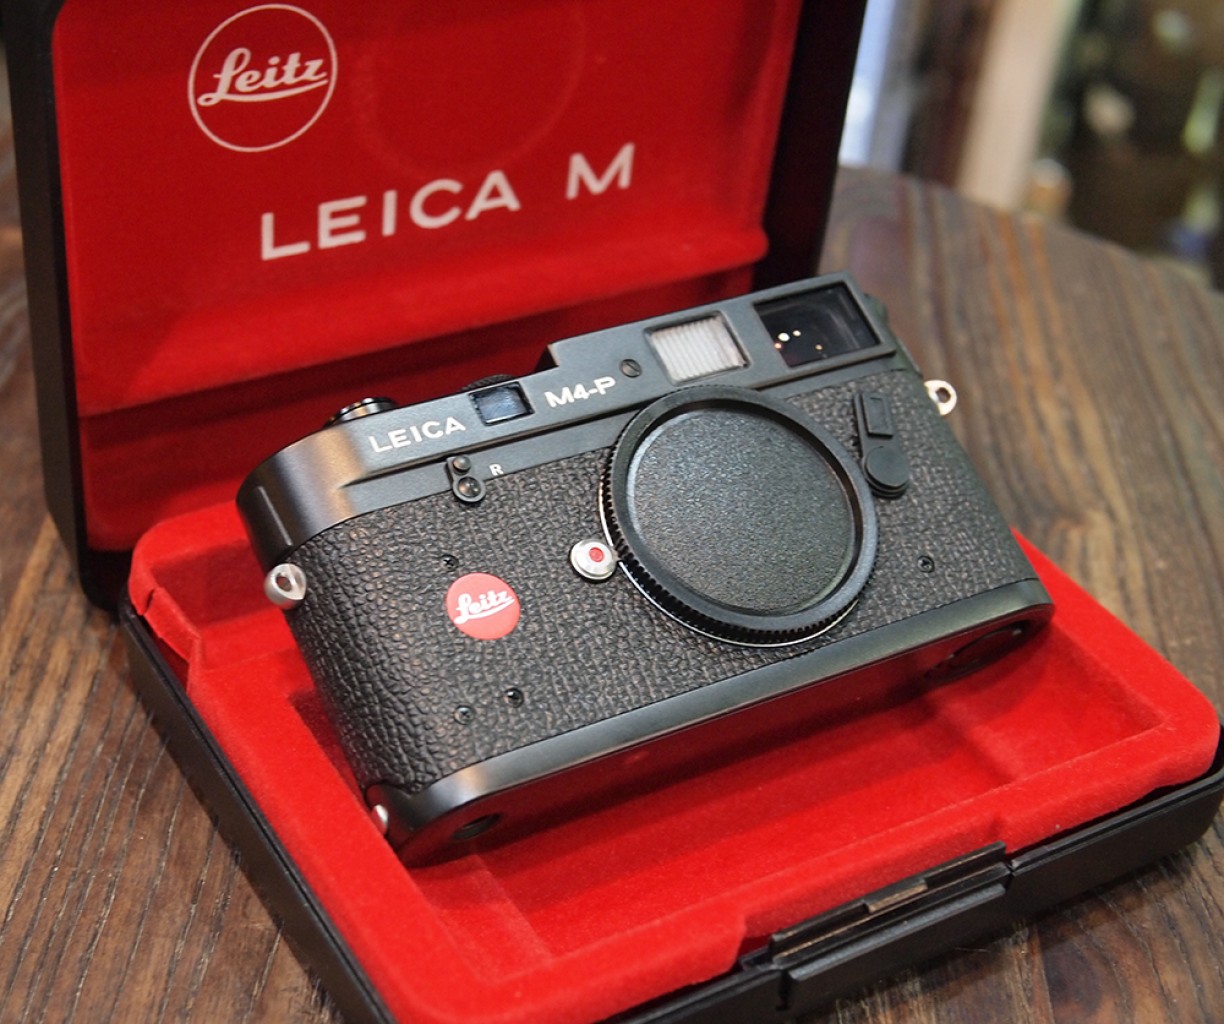 Leica M4-P Leica m4p Black Ernst leitz wetzlar plus Winder M4p - New Old Stock |2594|